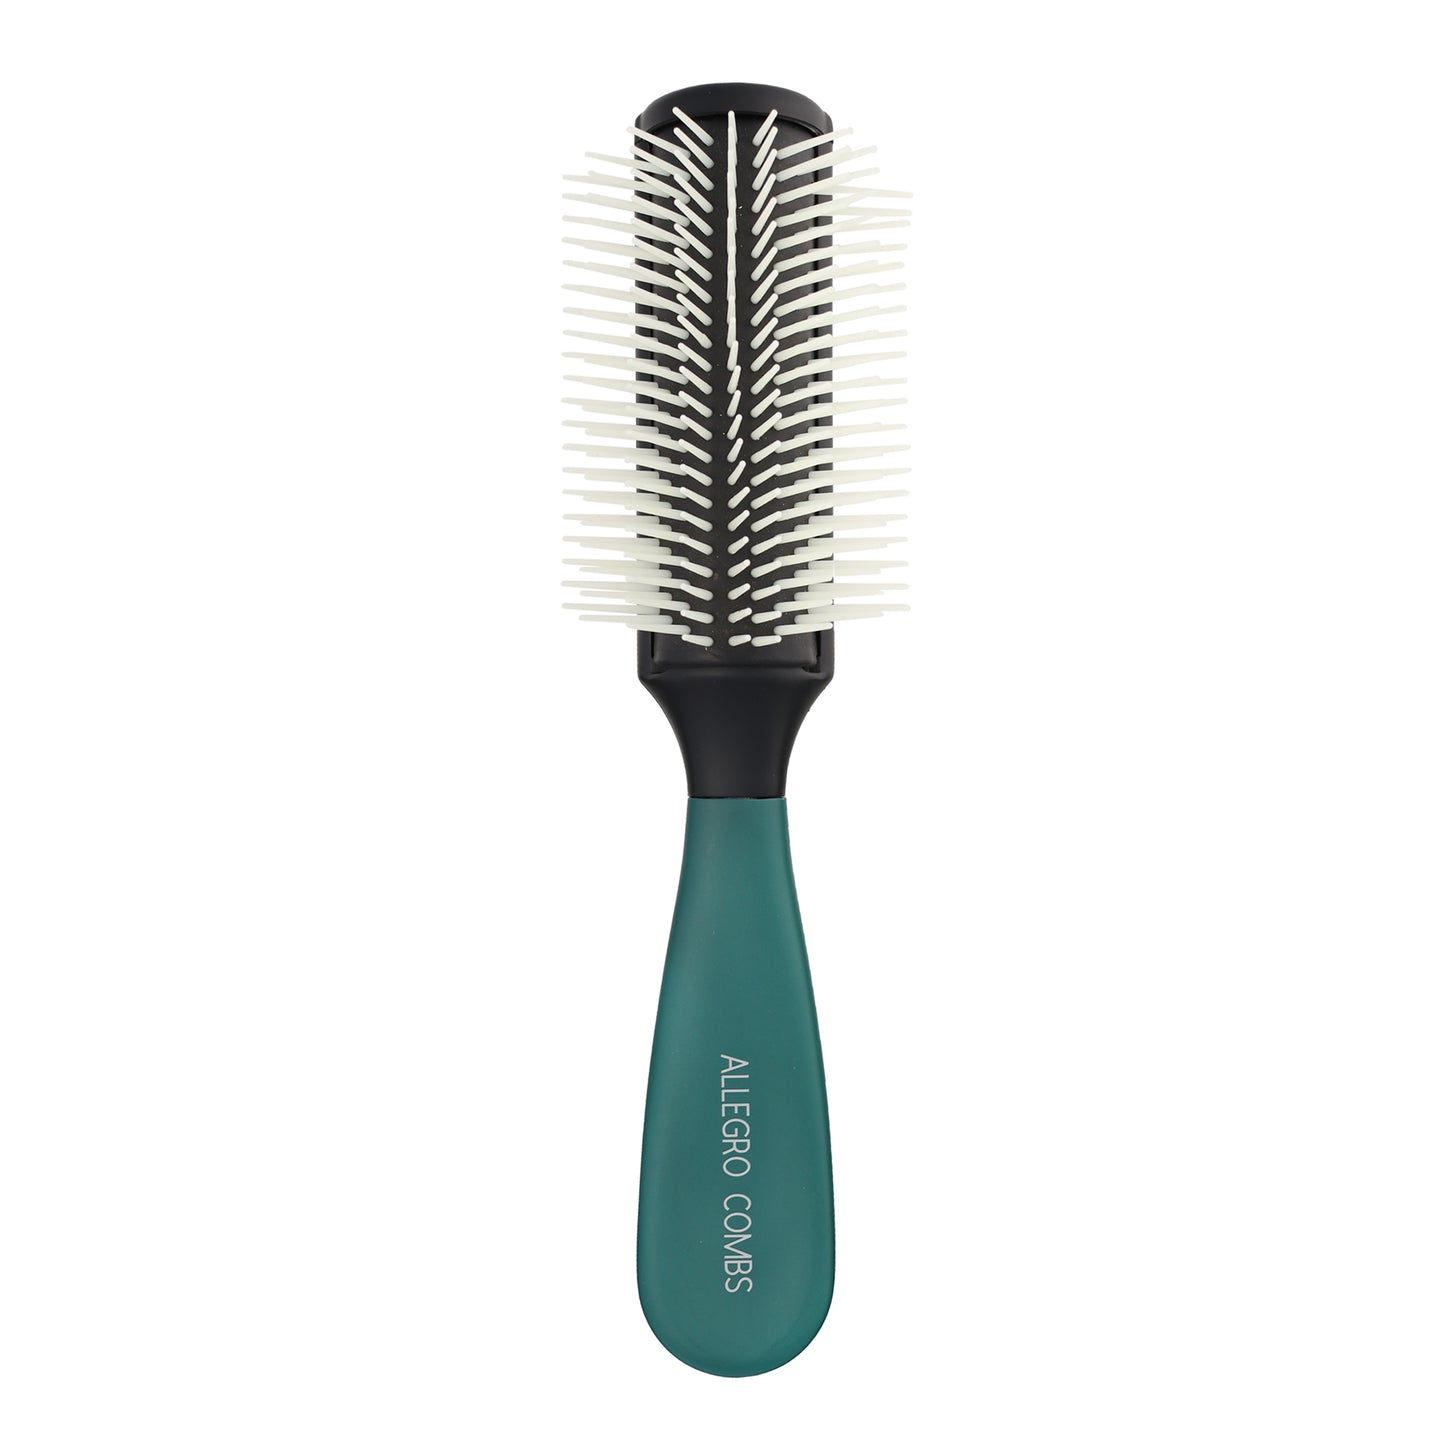 Allegro Combs Gripforte Detangler Hair Brush - A Versatile Styling Tool for Men, Women, and Children